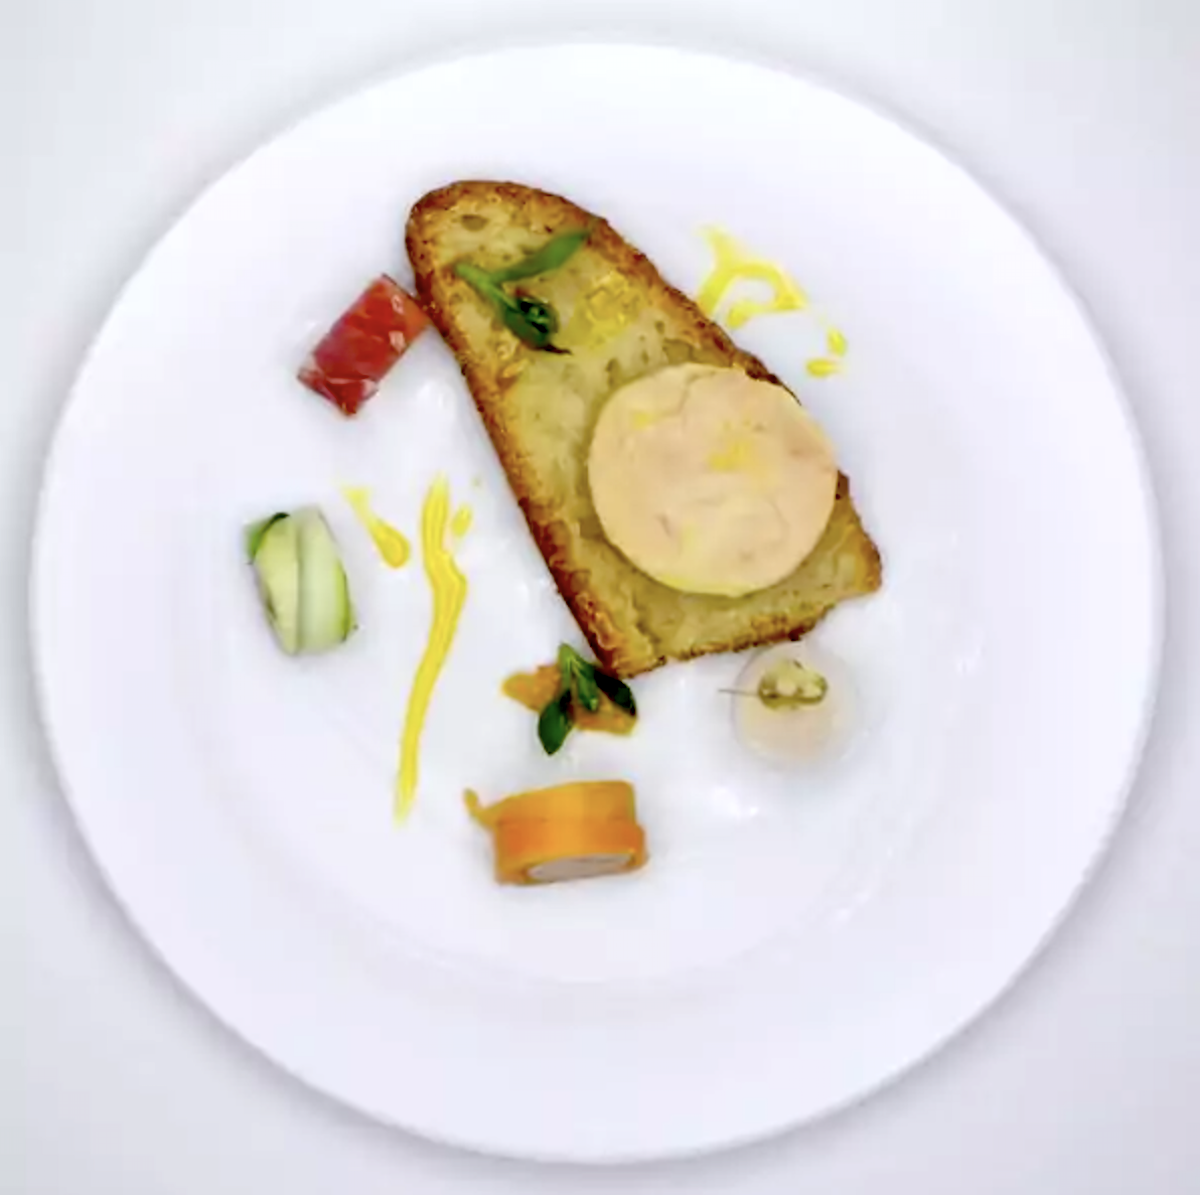 Makis de foie gras et son chutney d’agrumes